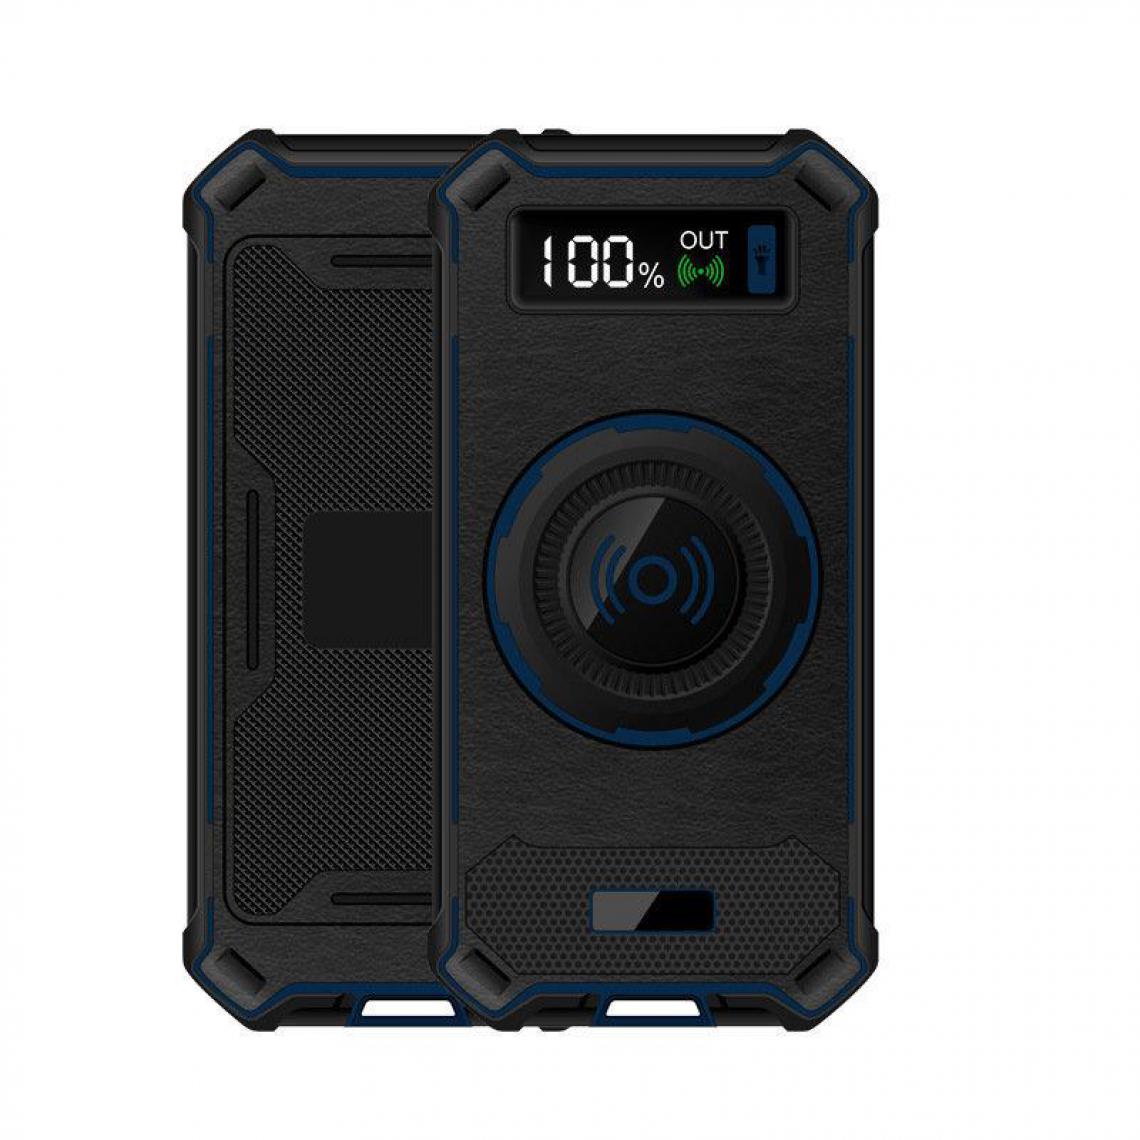 Chrono - Chargeur Portable 10000mAh de Banque D'alimentation Sans Fil Grande Capacité, Charge Rapide(Bleu) - Chargeur secteur téléphone